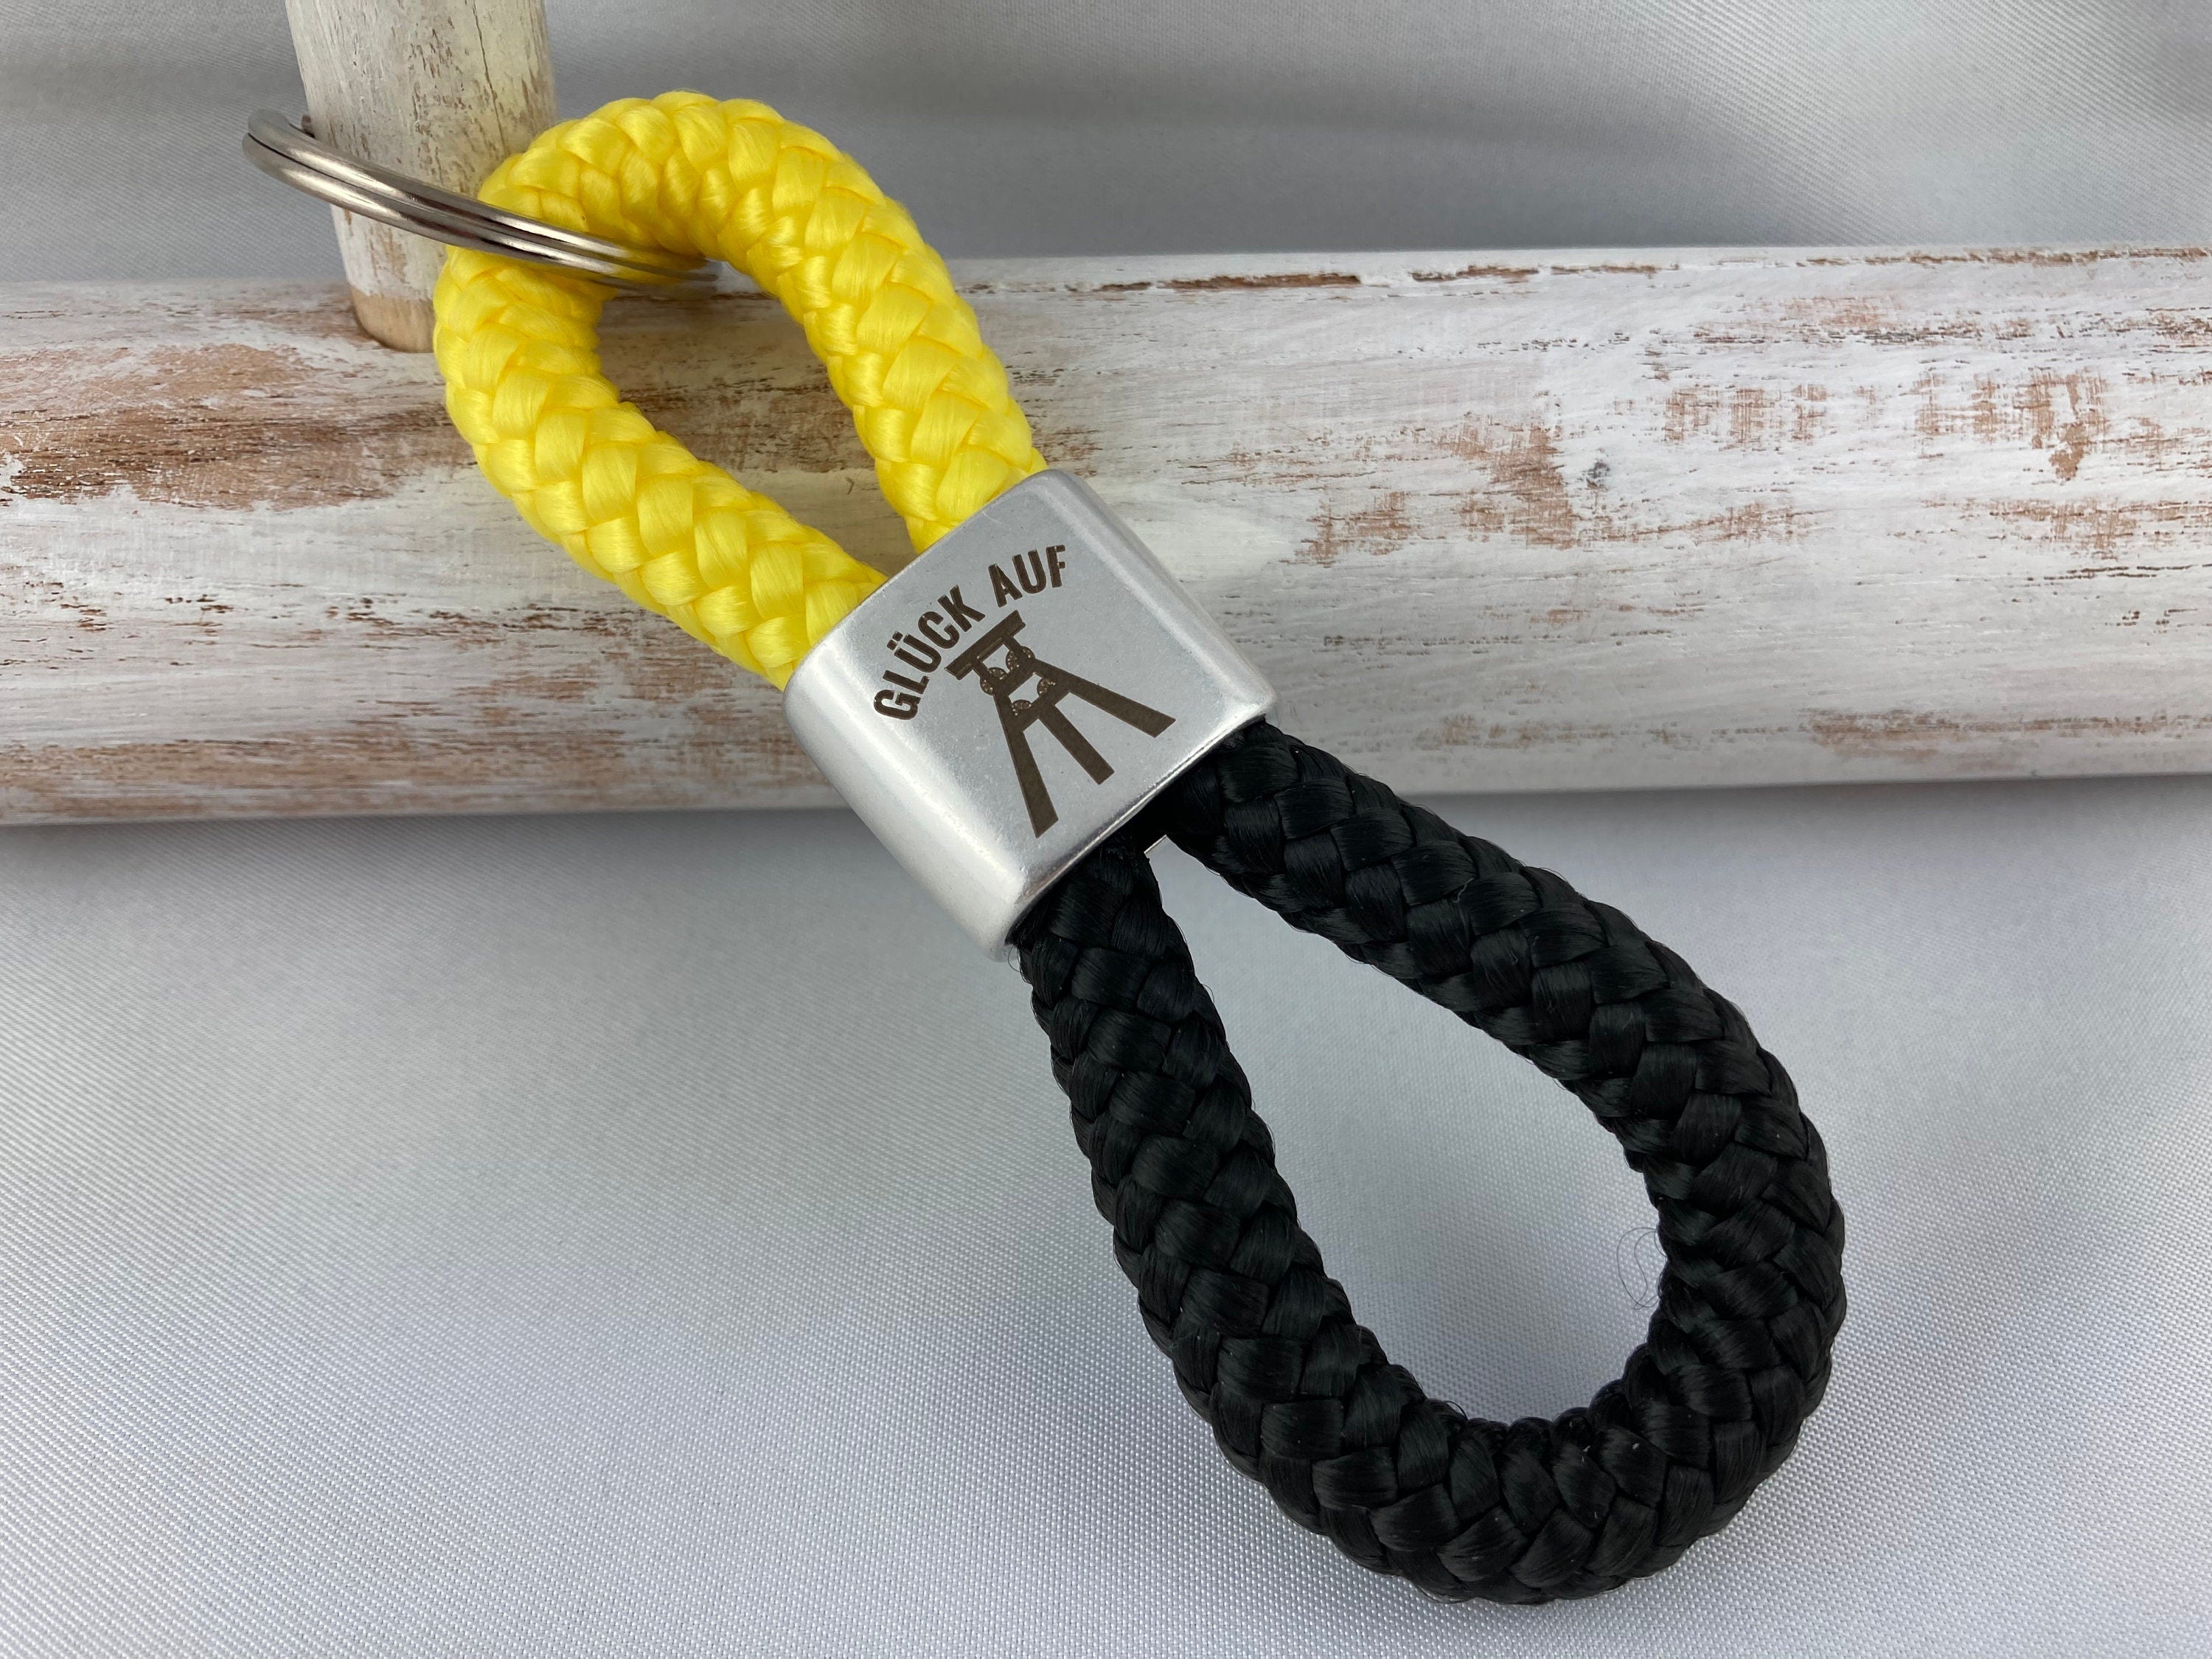 Schlüsselanhänger aus Segelseil mit versilbertem Zwischenstück mit Gravur "Glück auf", gelb/ schwarz